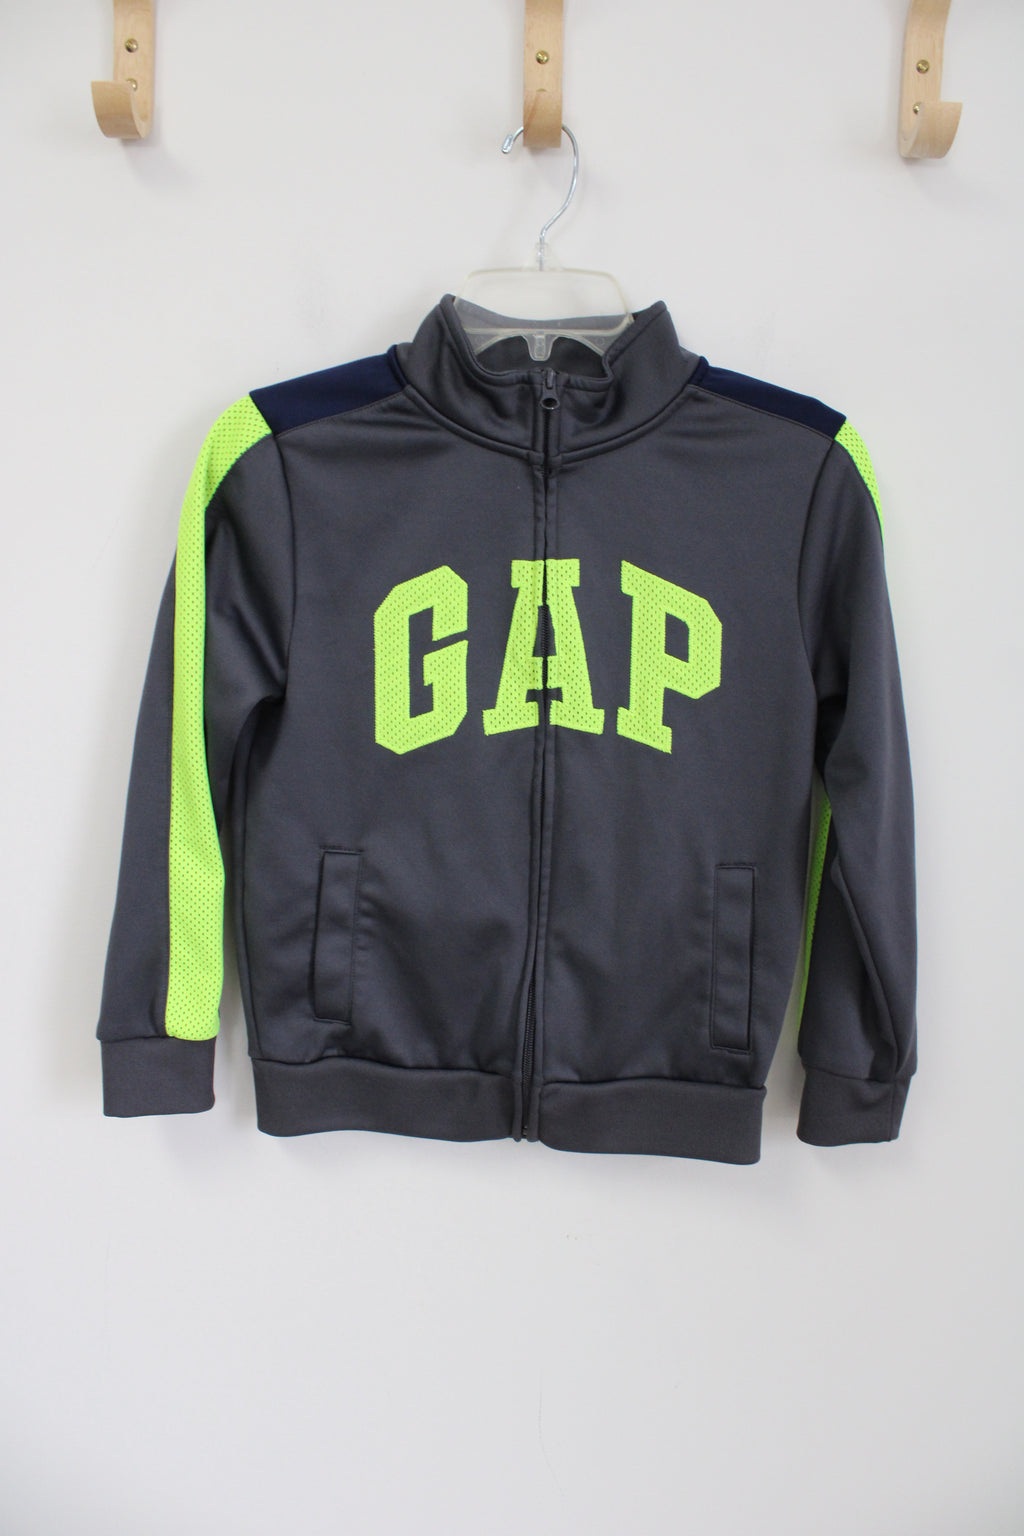 Gap Kids Gray Green Fleece Lined Jacket | Youth M (8/9)